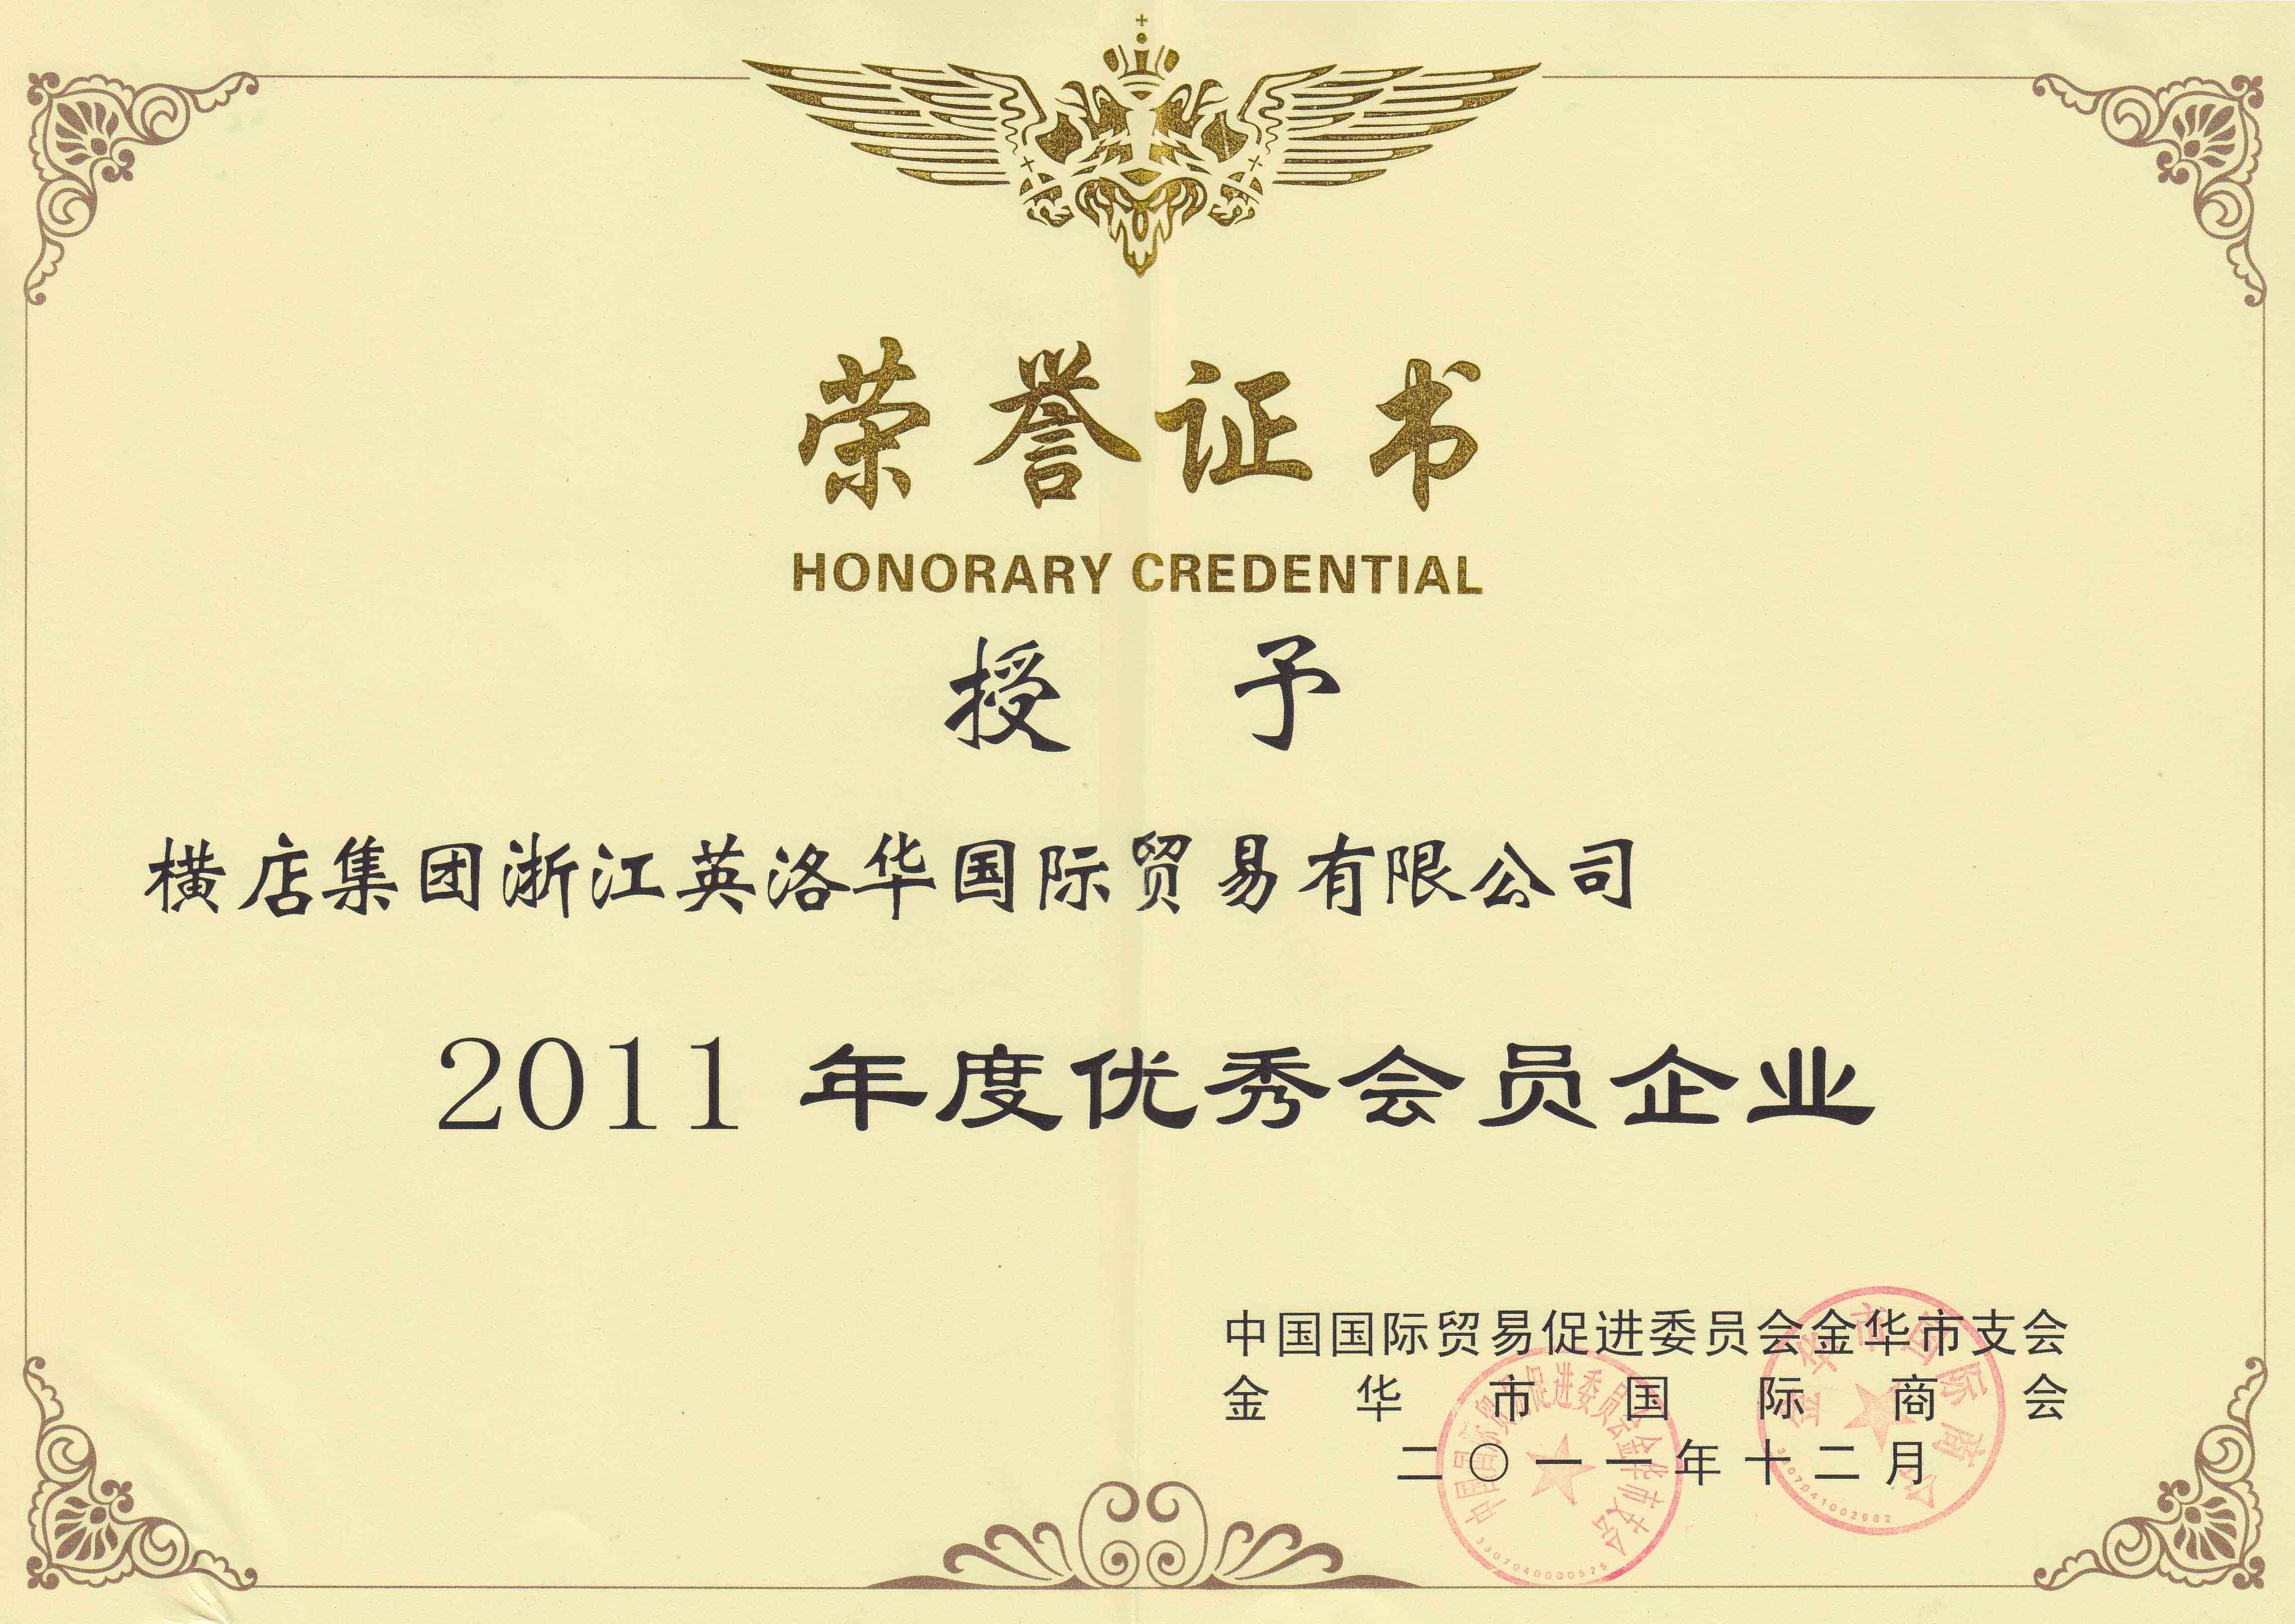 授予横店集团浙江英洛华国际贸易有限公司2011年度优秀凳企业